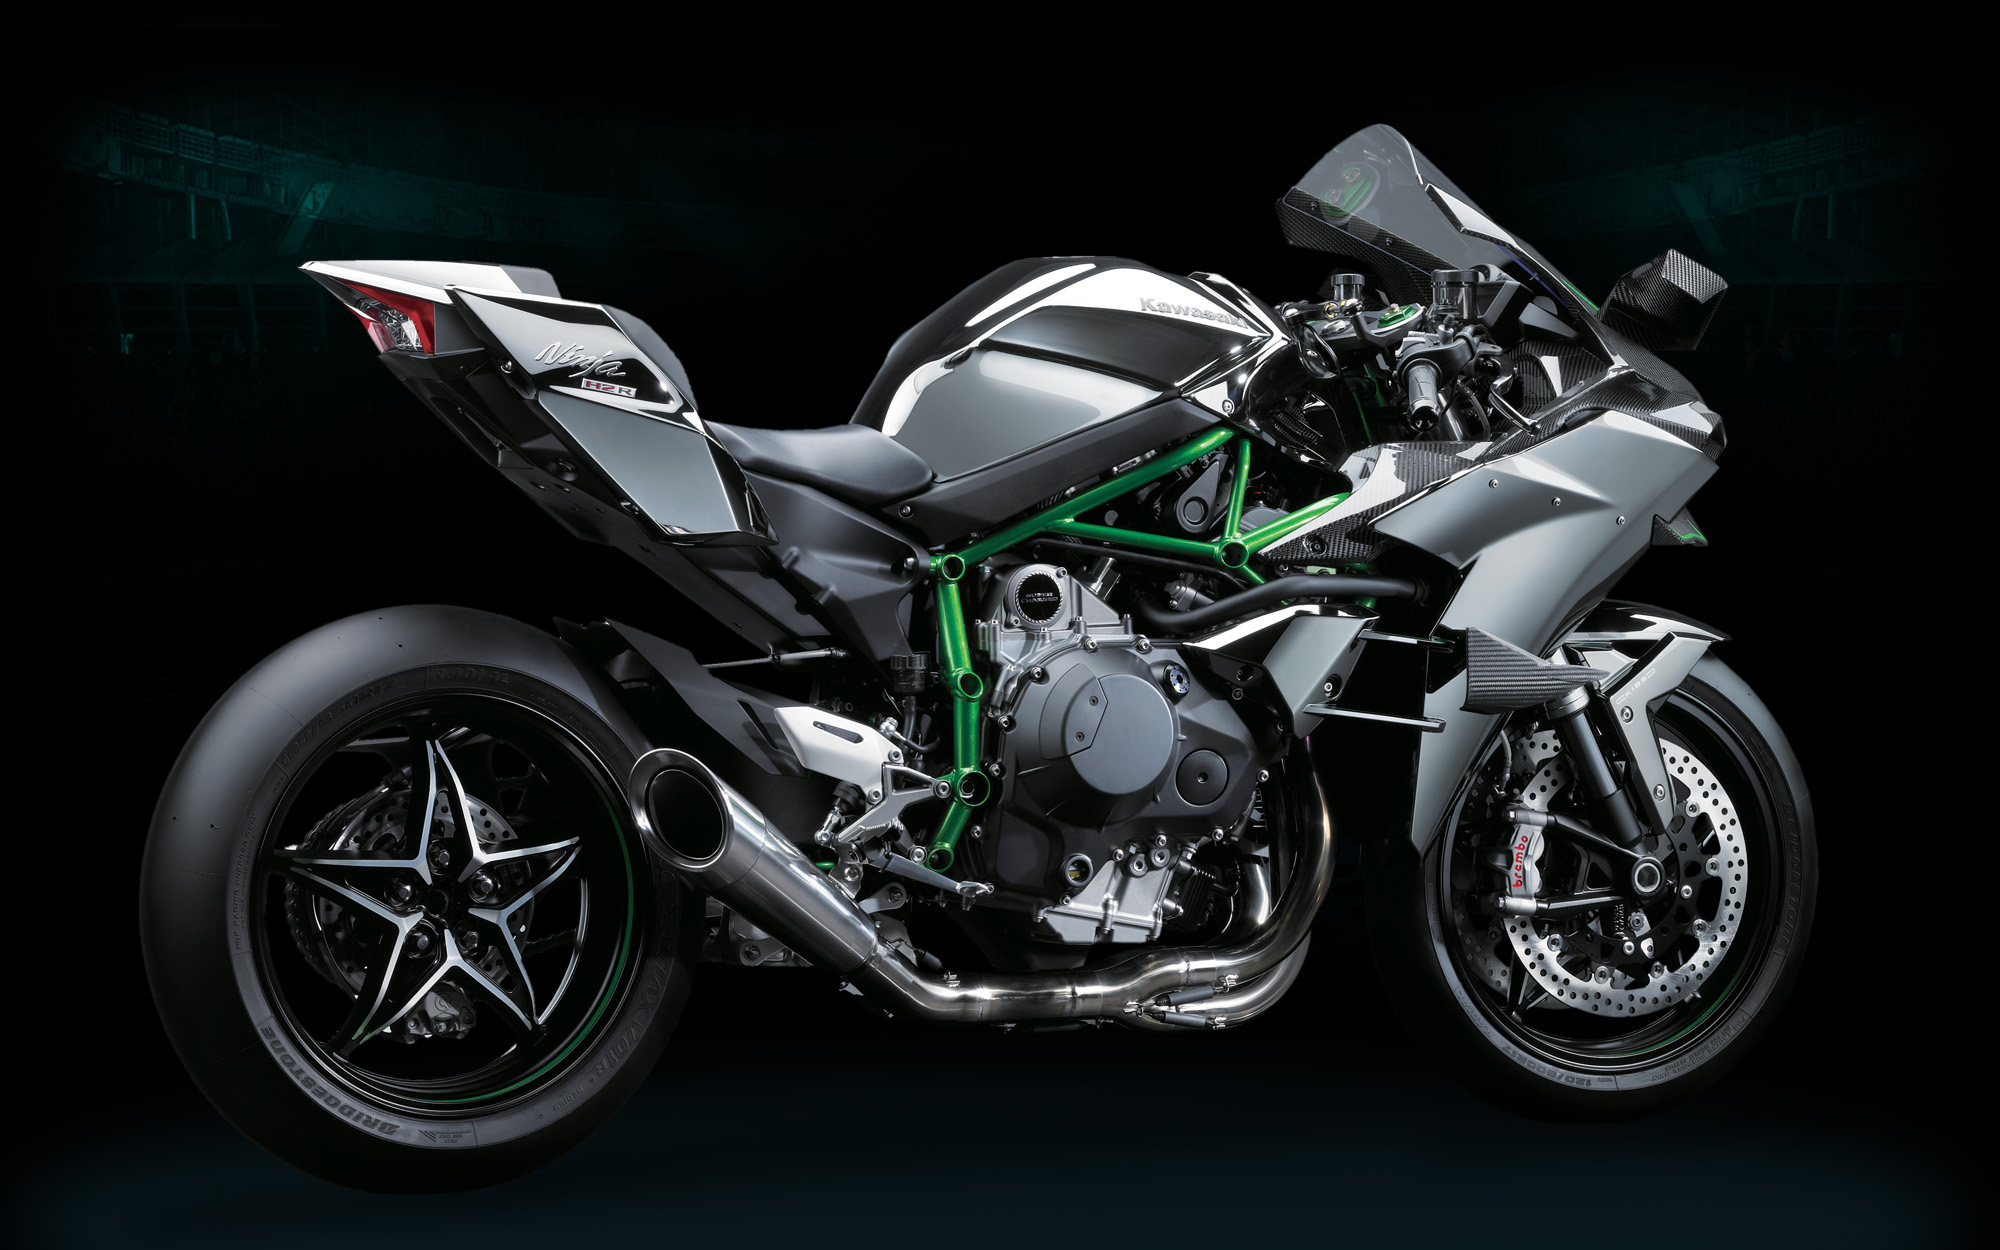 Kawasaki Ninja H2R Pics and Video Show a Game Changer - autoevolution